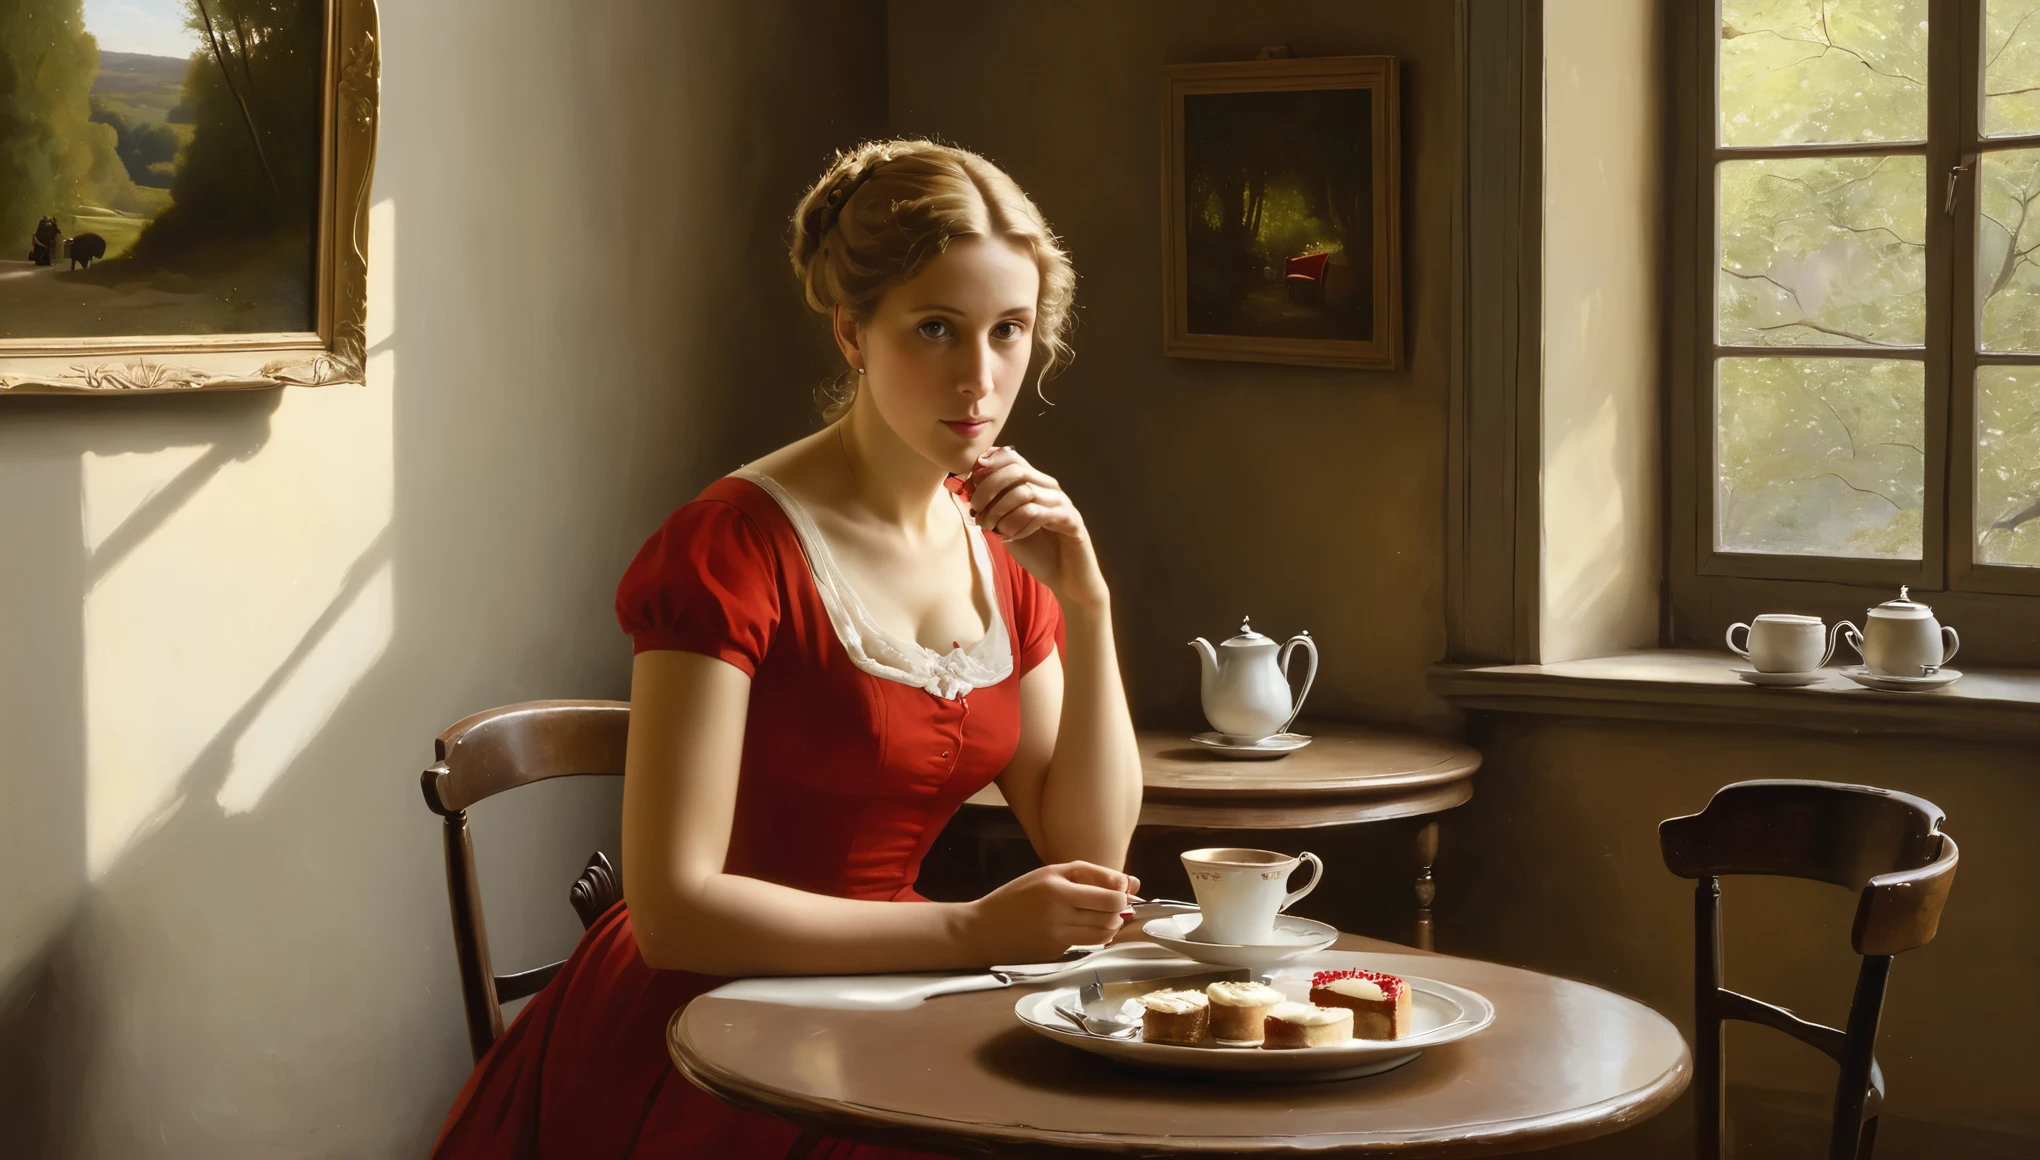 Ein Ölgemälde im Stil von Camille Corot porträtiert eine 50-jährige Frau in einem kurzen, tailliertes rotes Kleid mit kurzen, spärlich, leichtes lockiges Haar, das heißen Tee trinkt. Auf dem Tisch, Es gibt einen Teller mit Salat und einem kleinen roten Käsekuchen. Sie erwägt die Scheidung von ihrem Mann. im Hintergrund, die Wände eines gemütlichen Buenos Aires sehr kleinen Café mit Gemälden des Künstlers Camille Corot geschmückt, mit Morgenlicht, das durch das Fenster strömt.